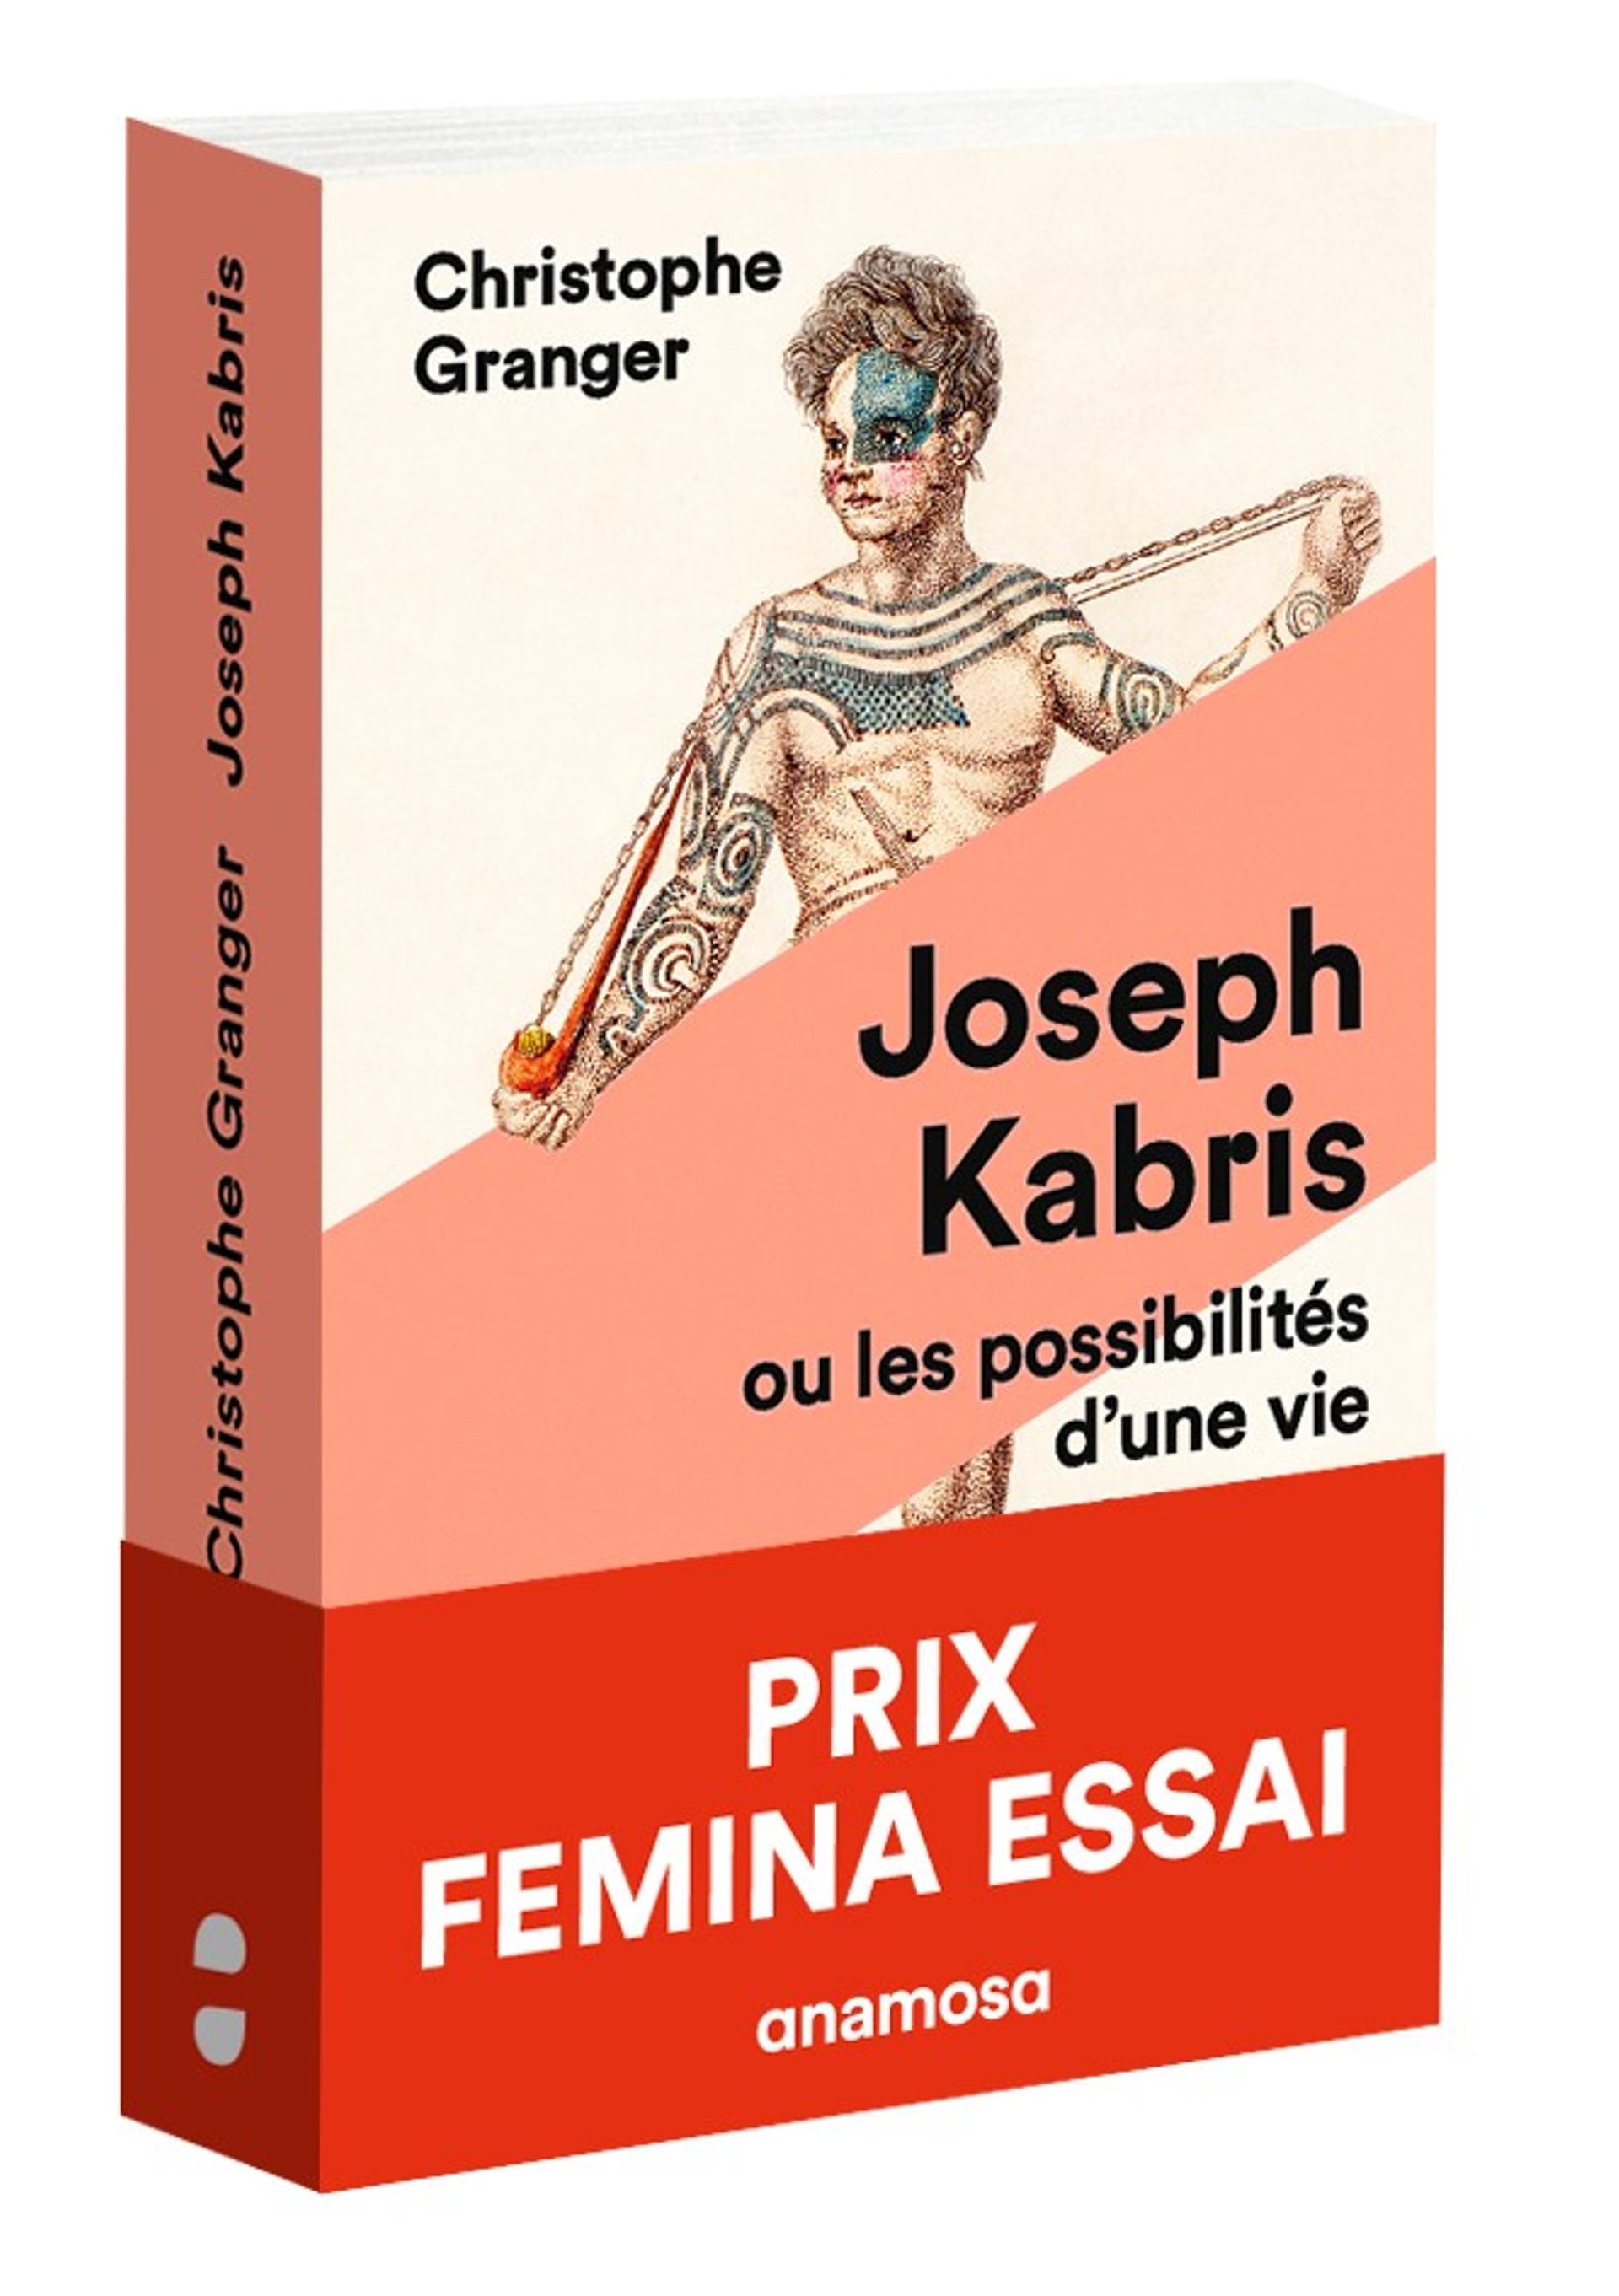 Christophe Granger,  "Joseph Kabris ou les possibilités d’une vie"